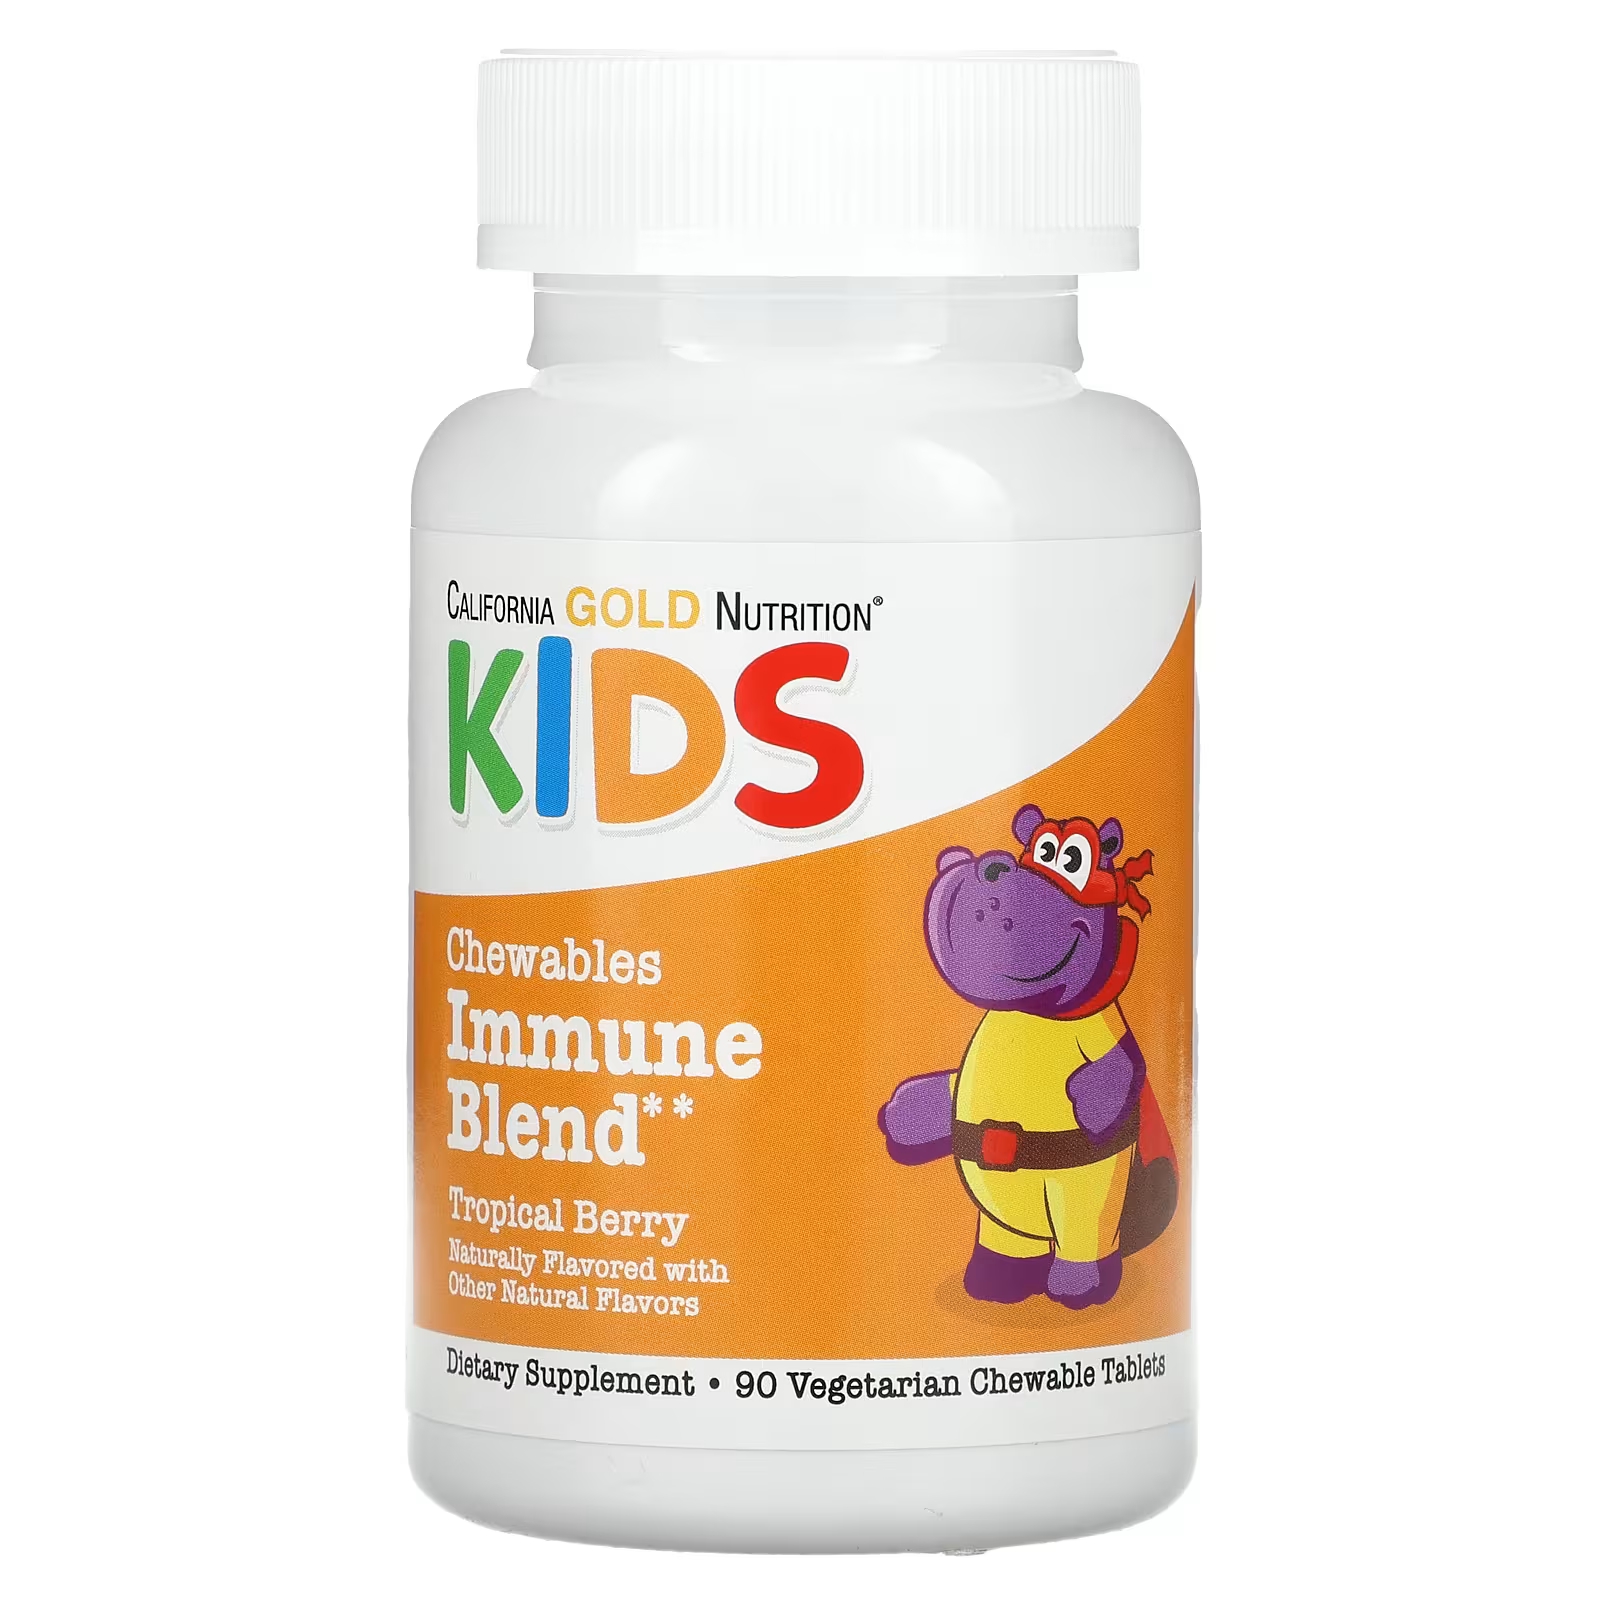 Жевательная смесь для иммунитета детей California Gold Nutrition, натуральный вкус тропических ягод, 90 вегетарианских таблеток